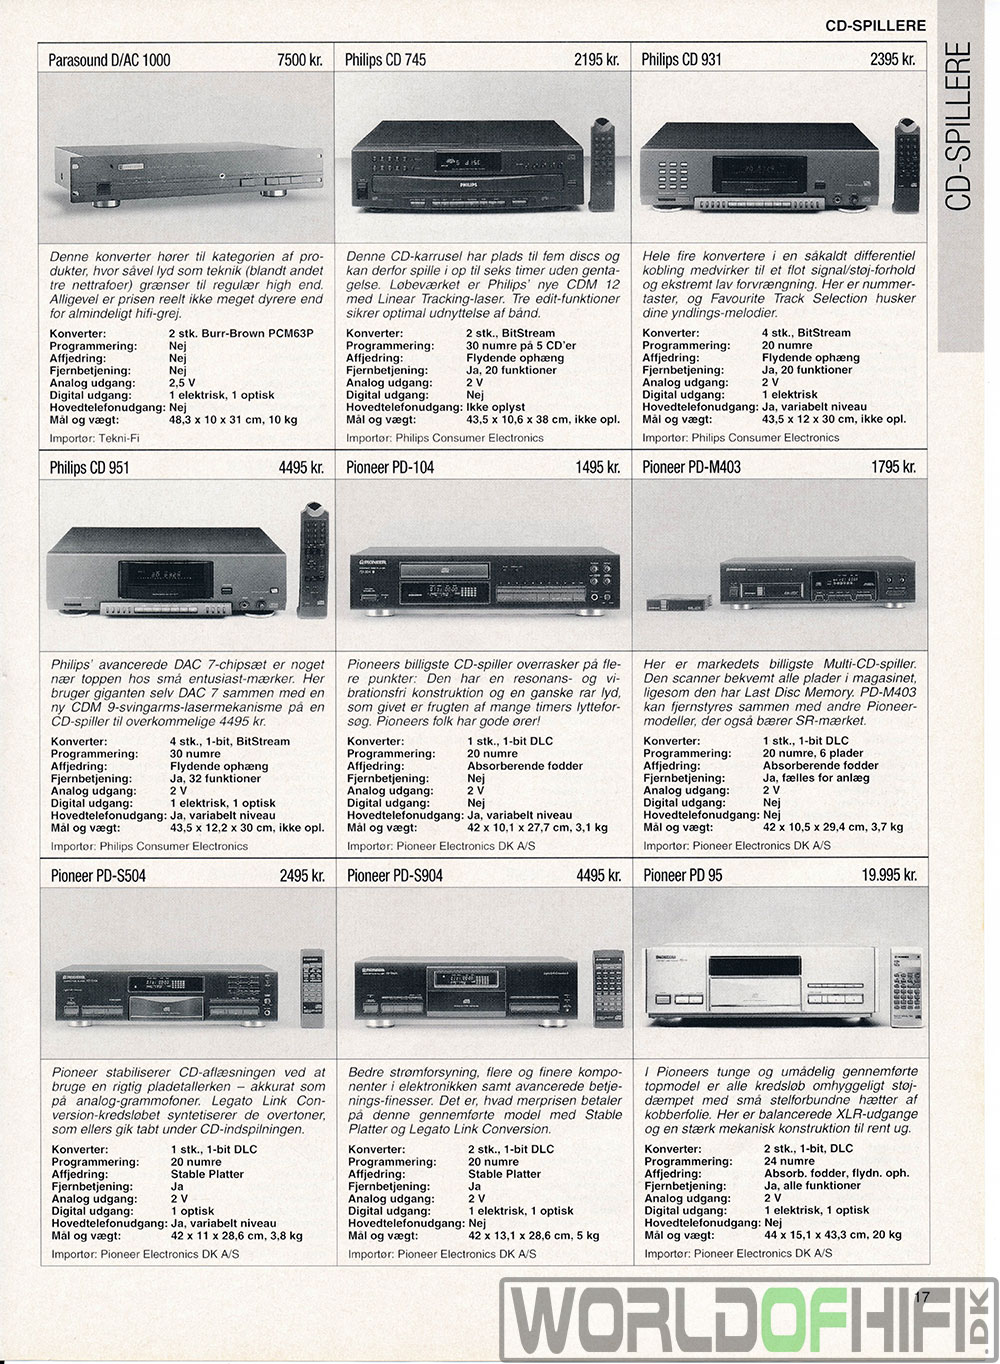 Hi-Fi Revyen, 96, 17, Cd-spillere, , 